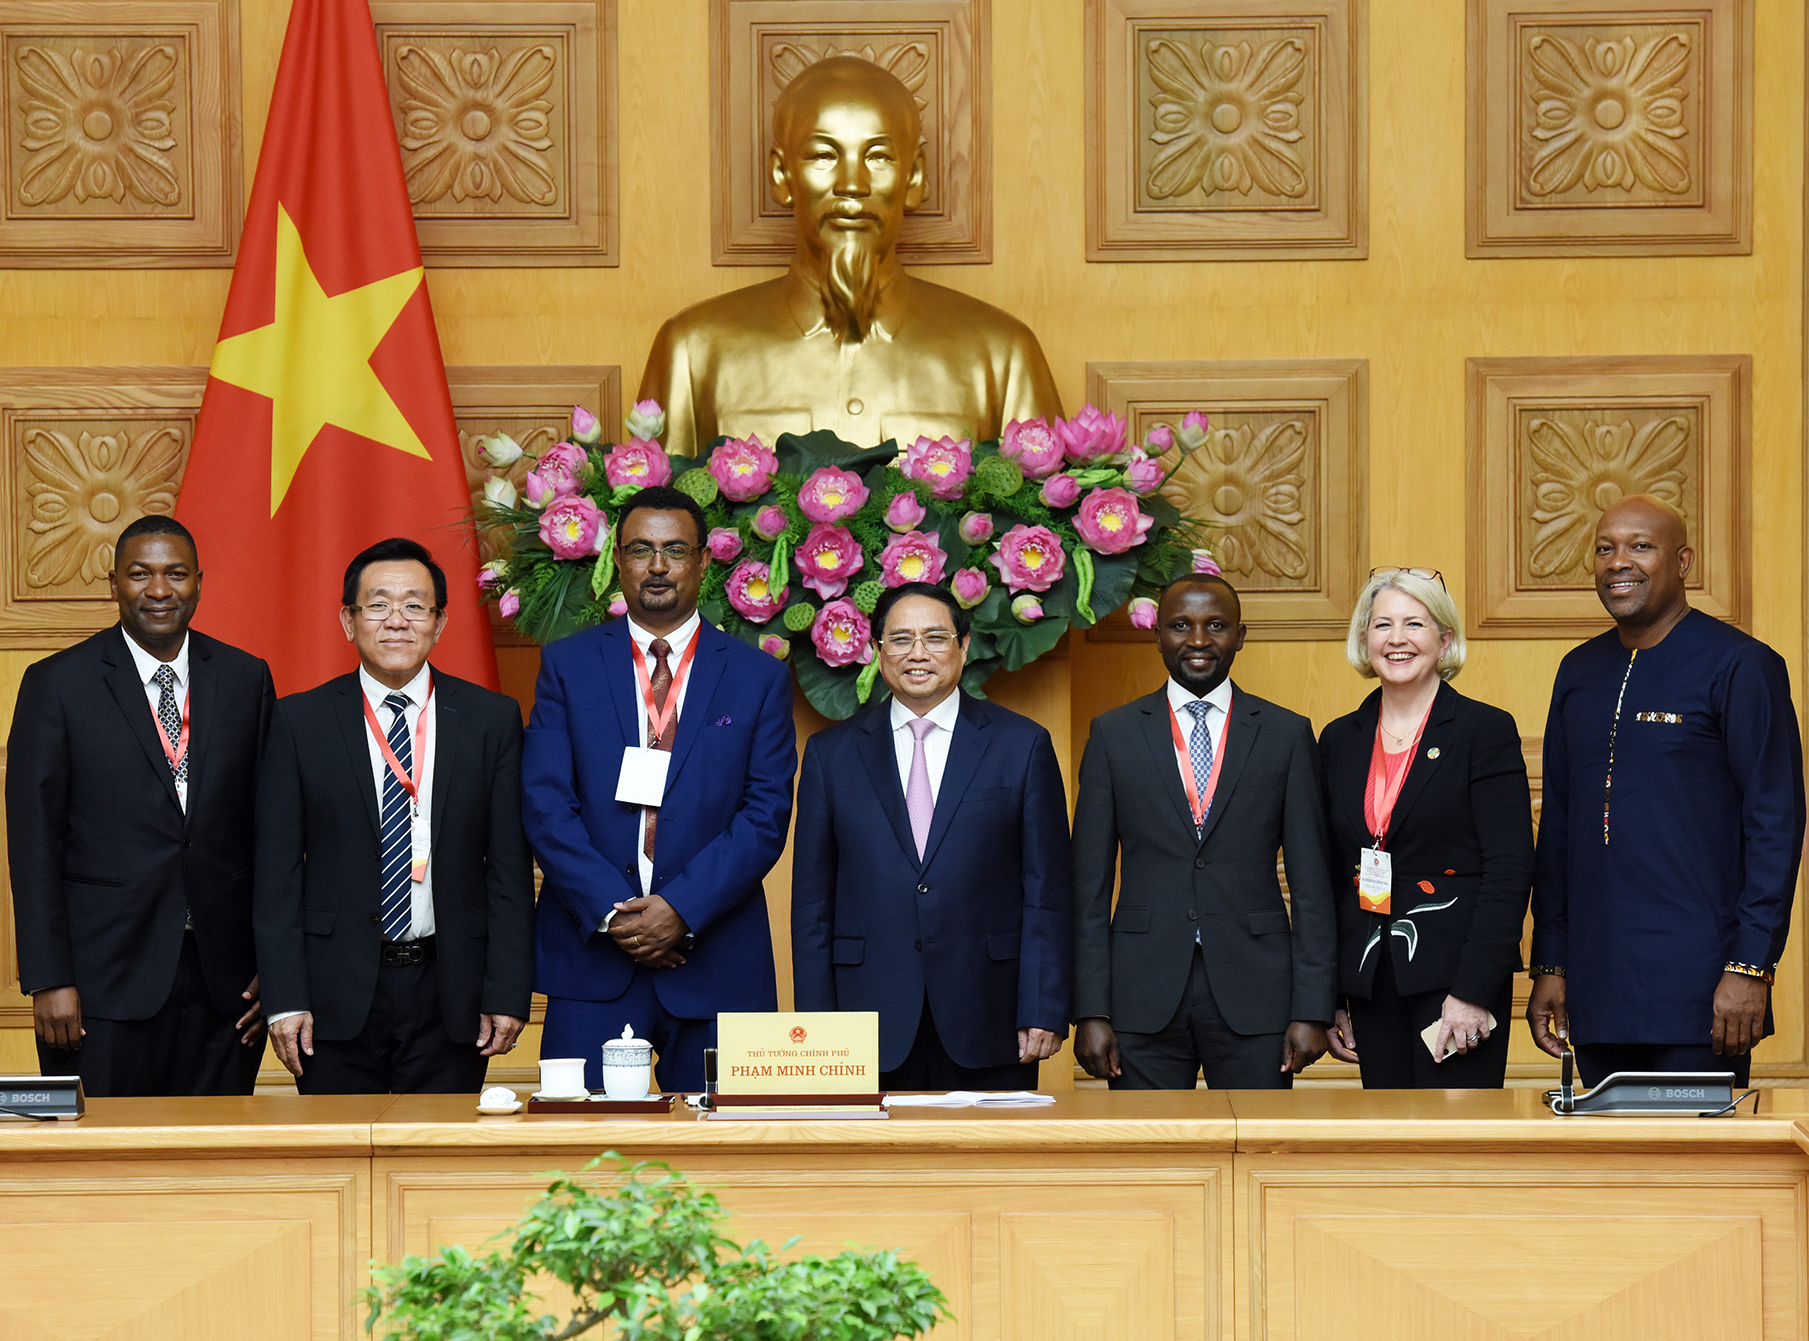 Thủ tướng Phạm Minh Chính và lãnh đạo Bộ Nông nghiệp các nước dự Hội nghị toàn cầu lần thứ 4 Hệ thống lương thực, thực phẩm bền vững.